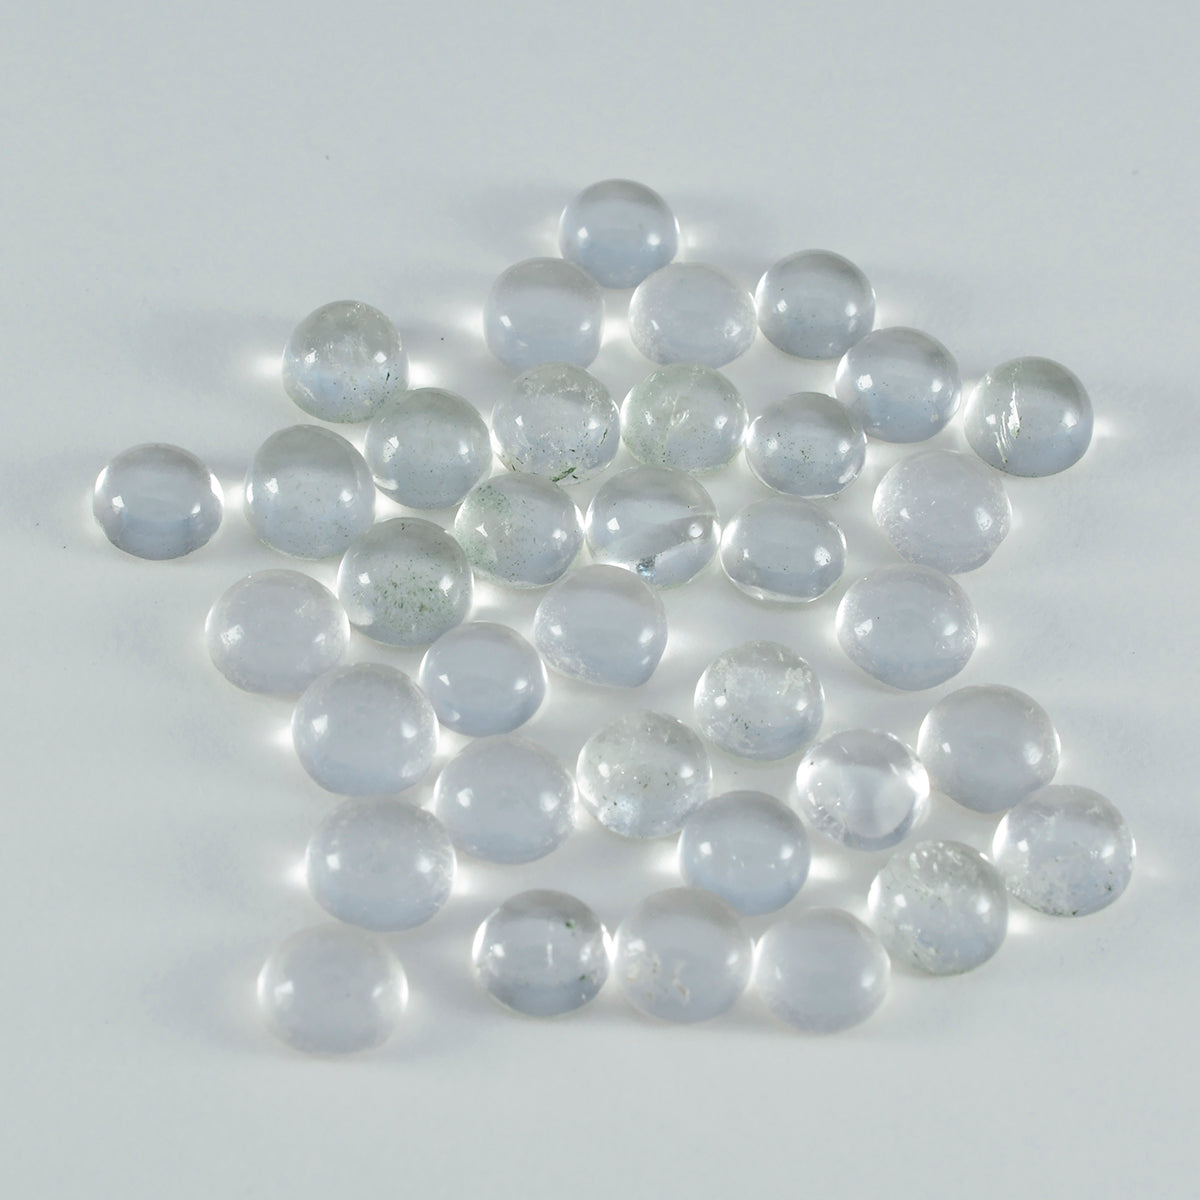 Riyogems 1 Stück weißer Kristallquarz-Cabochon, 4 x 4 mm, runde Form, AA-Qualität, lose Edelsteine